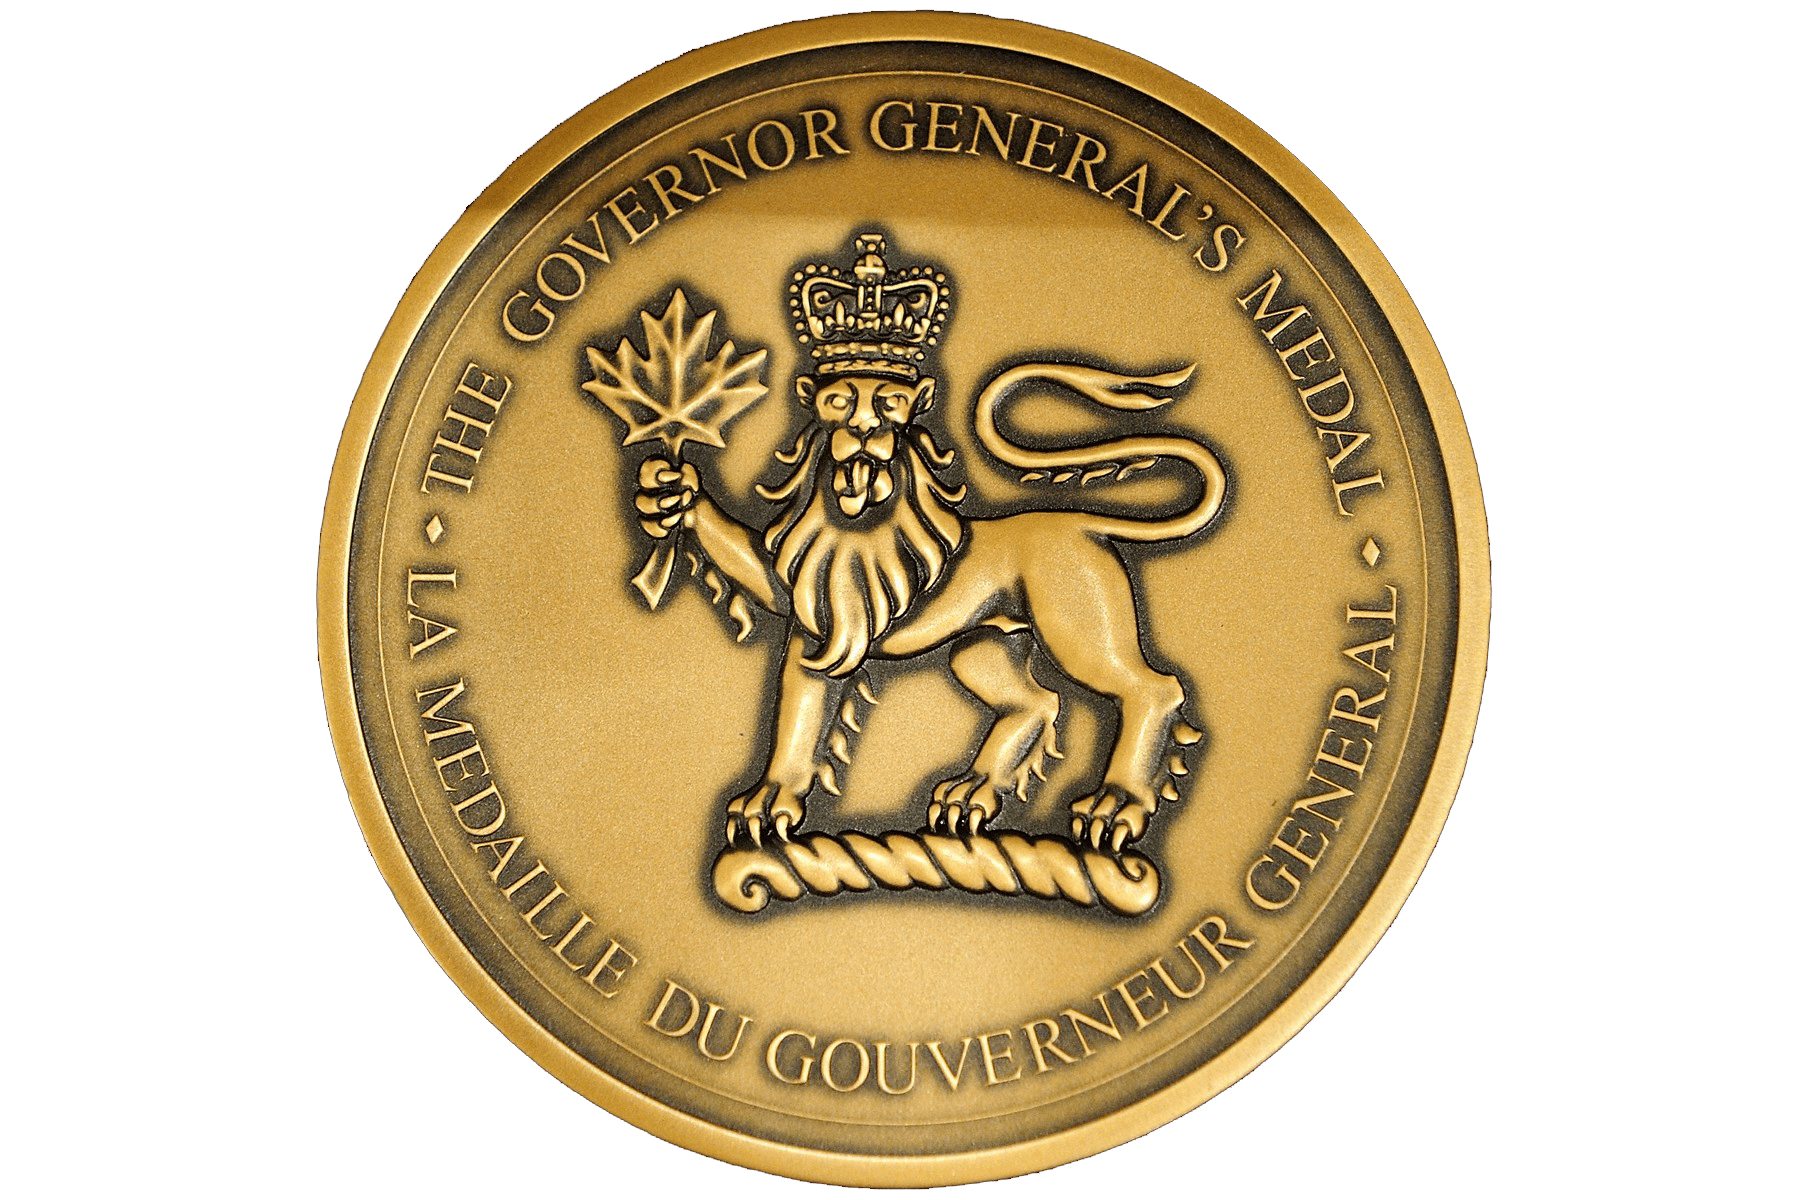 GG-Award-Medal - white background